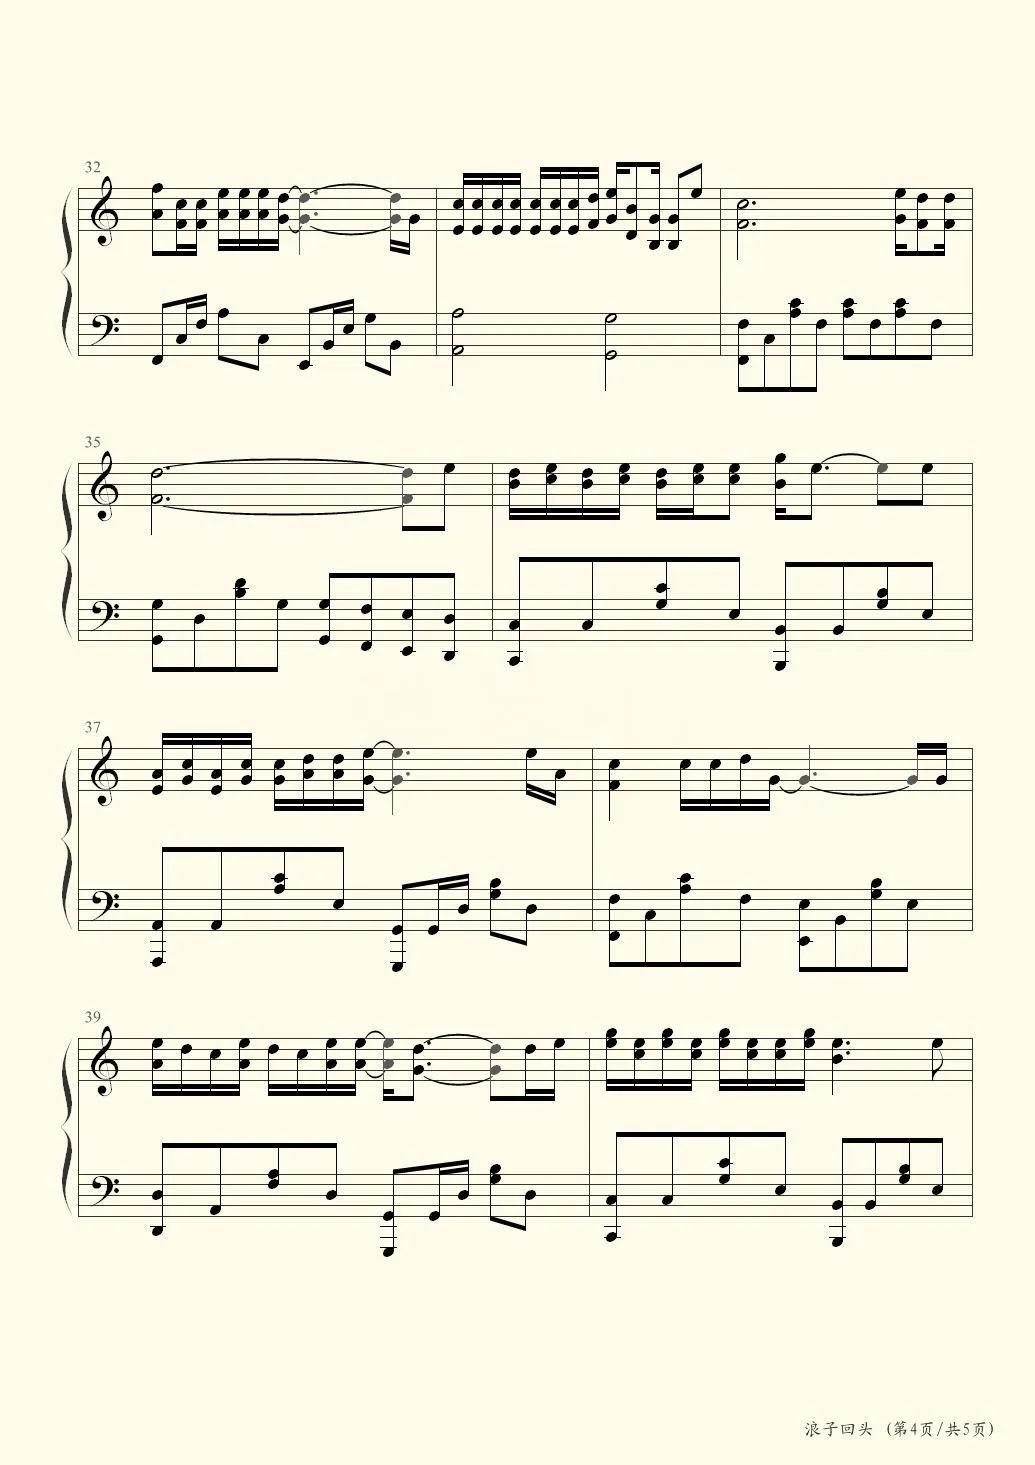 简化版《浪子回头》钢琴谱 - 初学者最易上手 - 茄子蛋带指法钢琴谱子 - 钢琴简谱